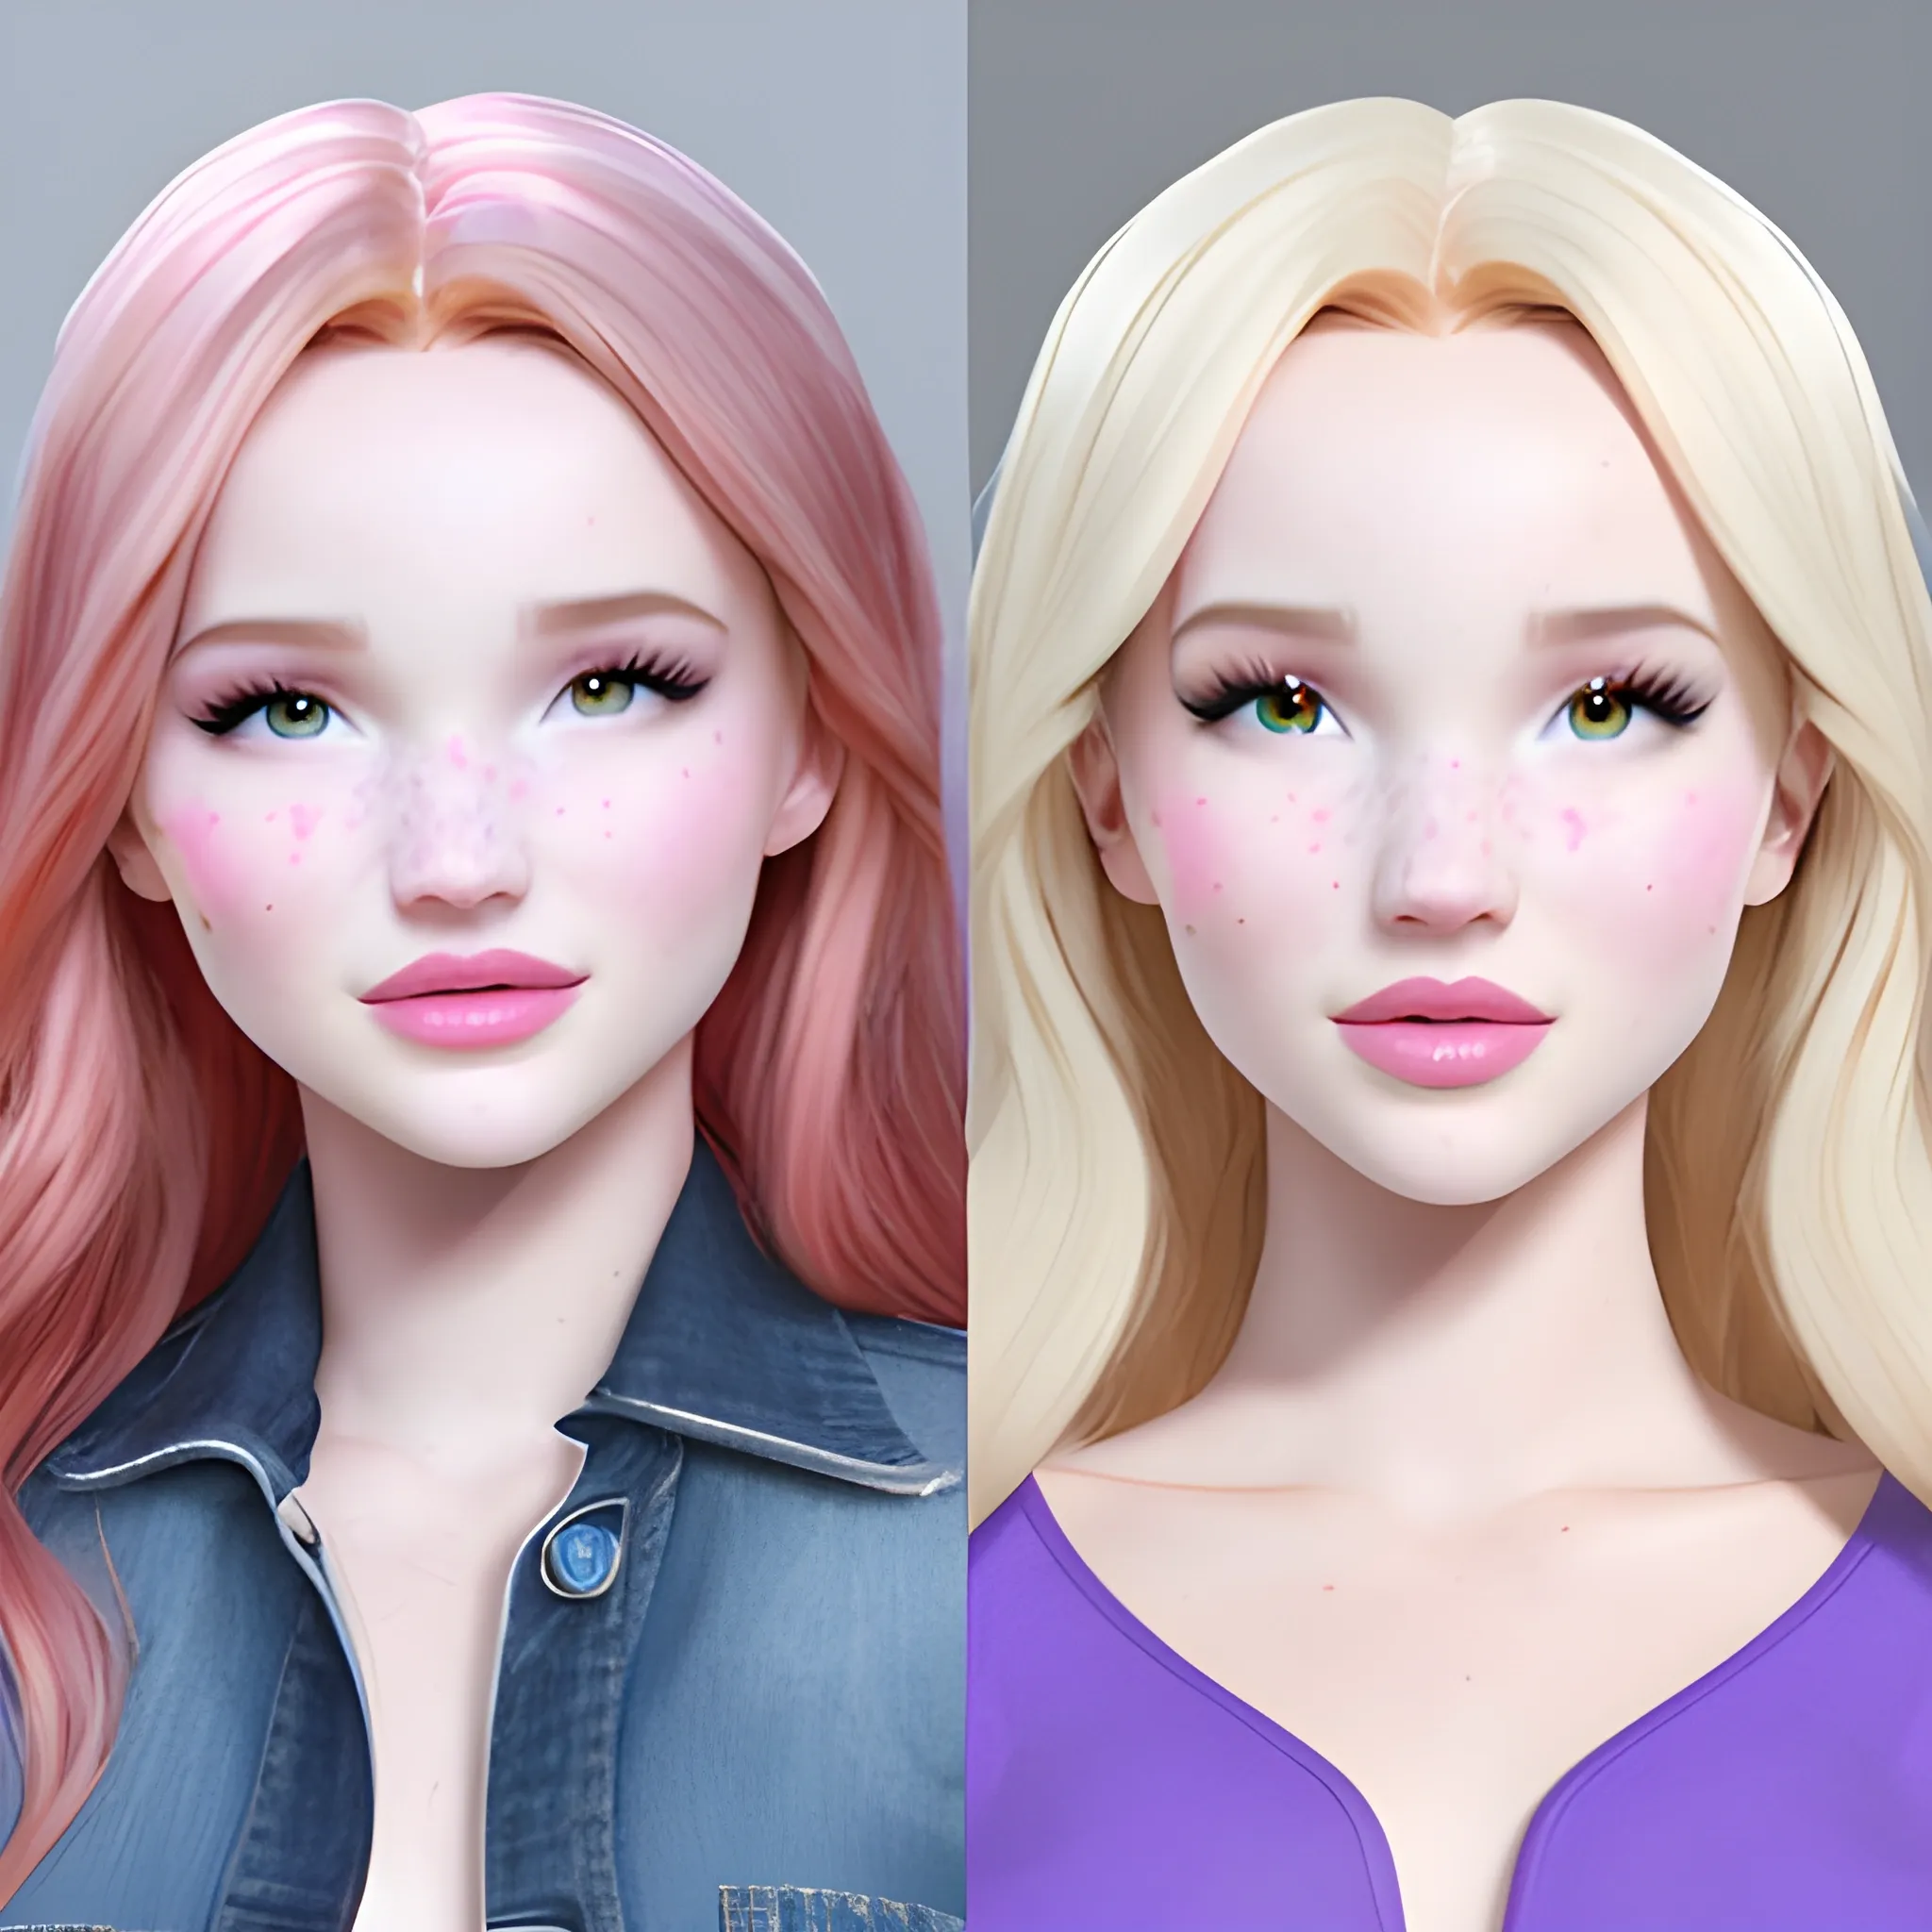 Bella Thorne / Dove Cameron face morph, 3D